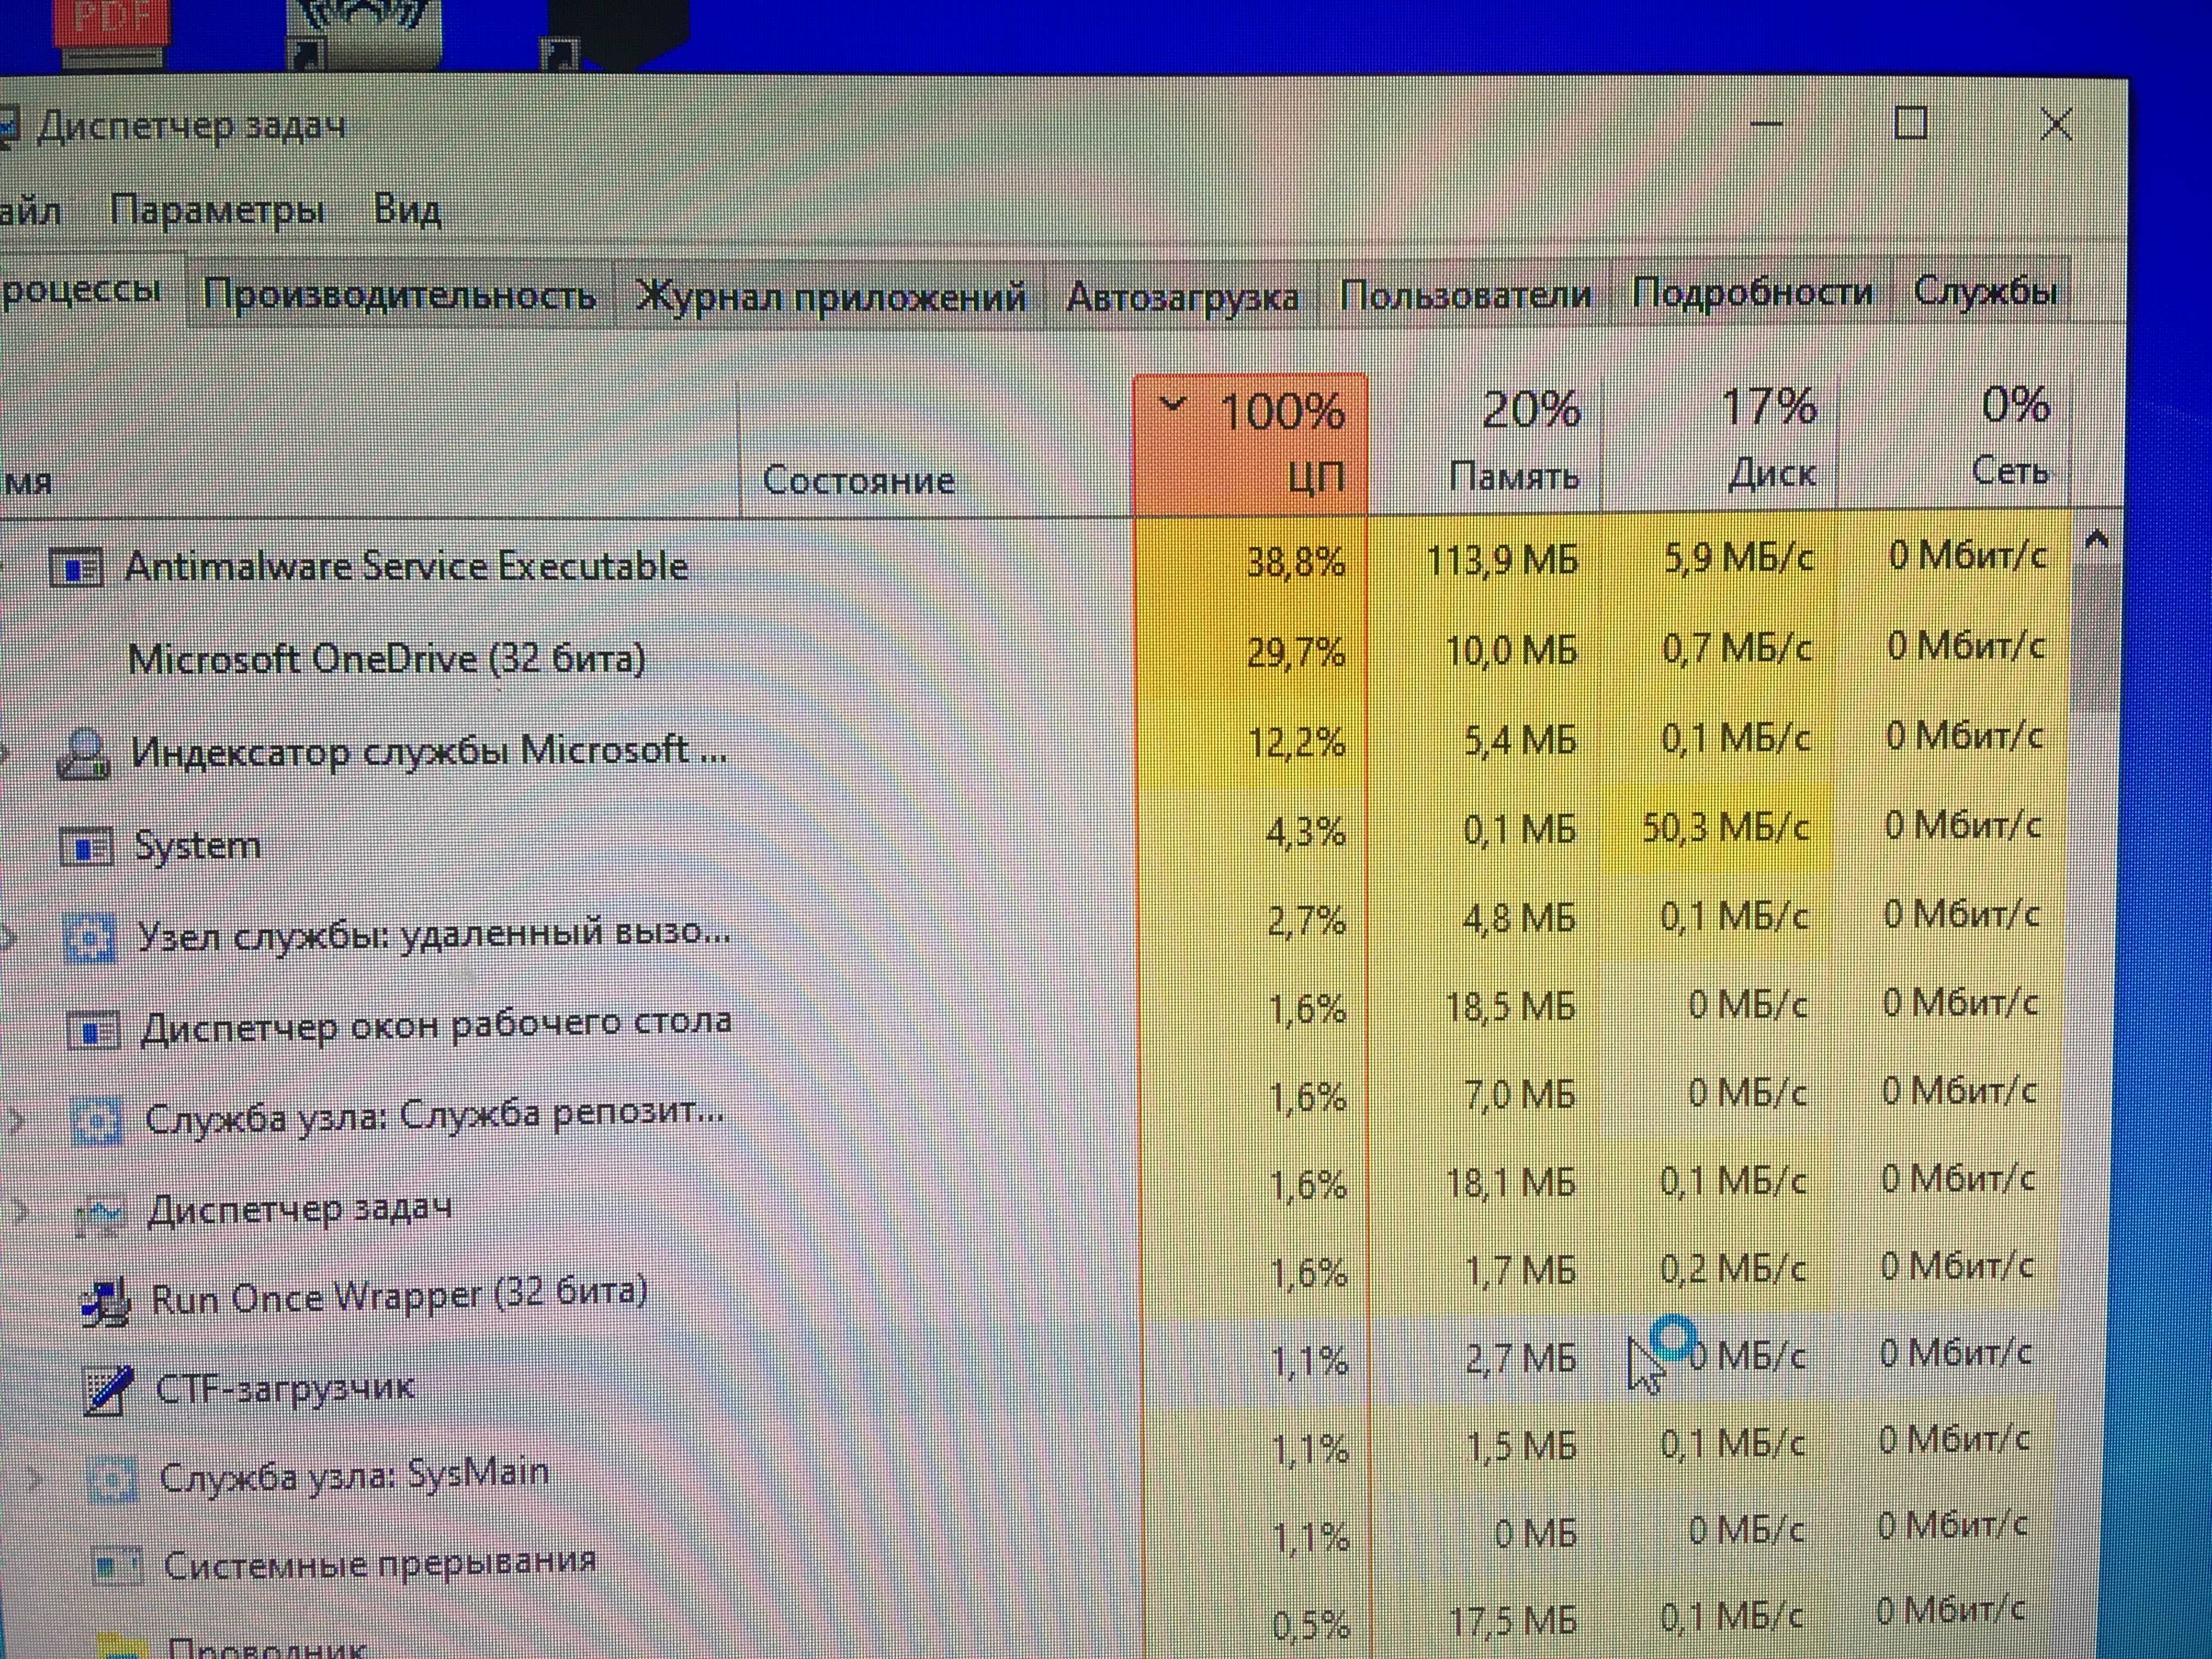 Процесс system грузит windows, что делать? загруженность жесткого диска или процессора 100%